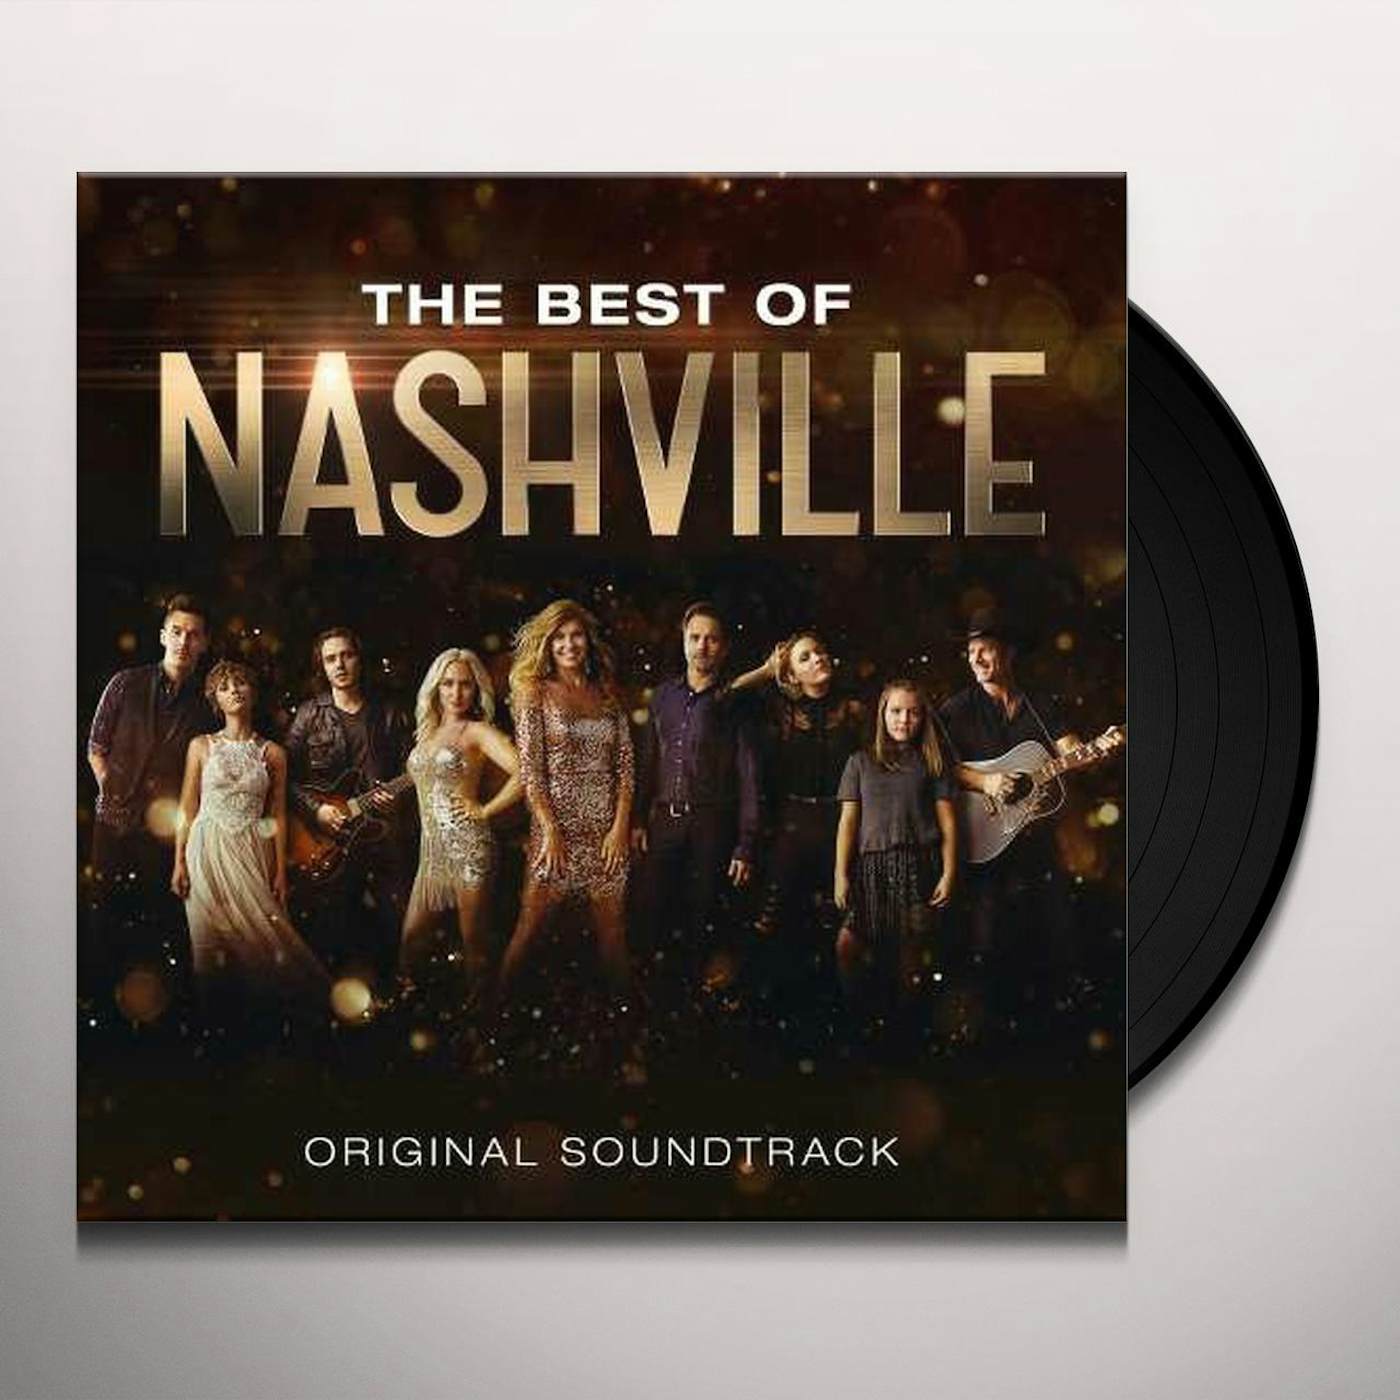 Win Nashville Season 1-5 soundtrack and boxset - HeyUGuys